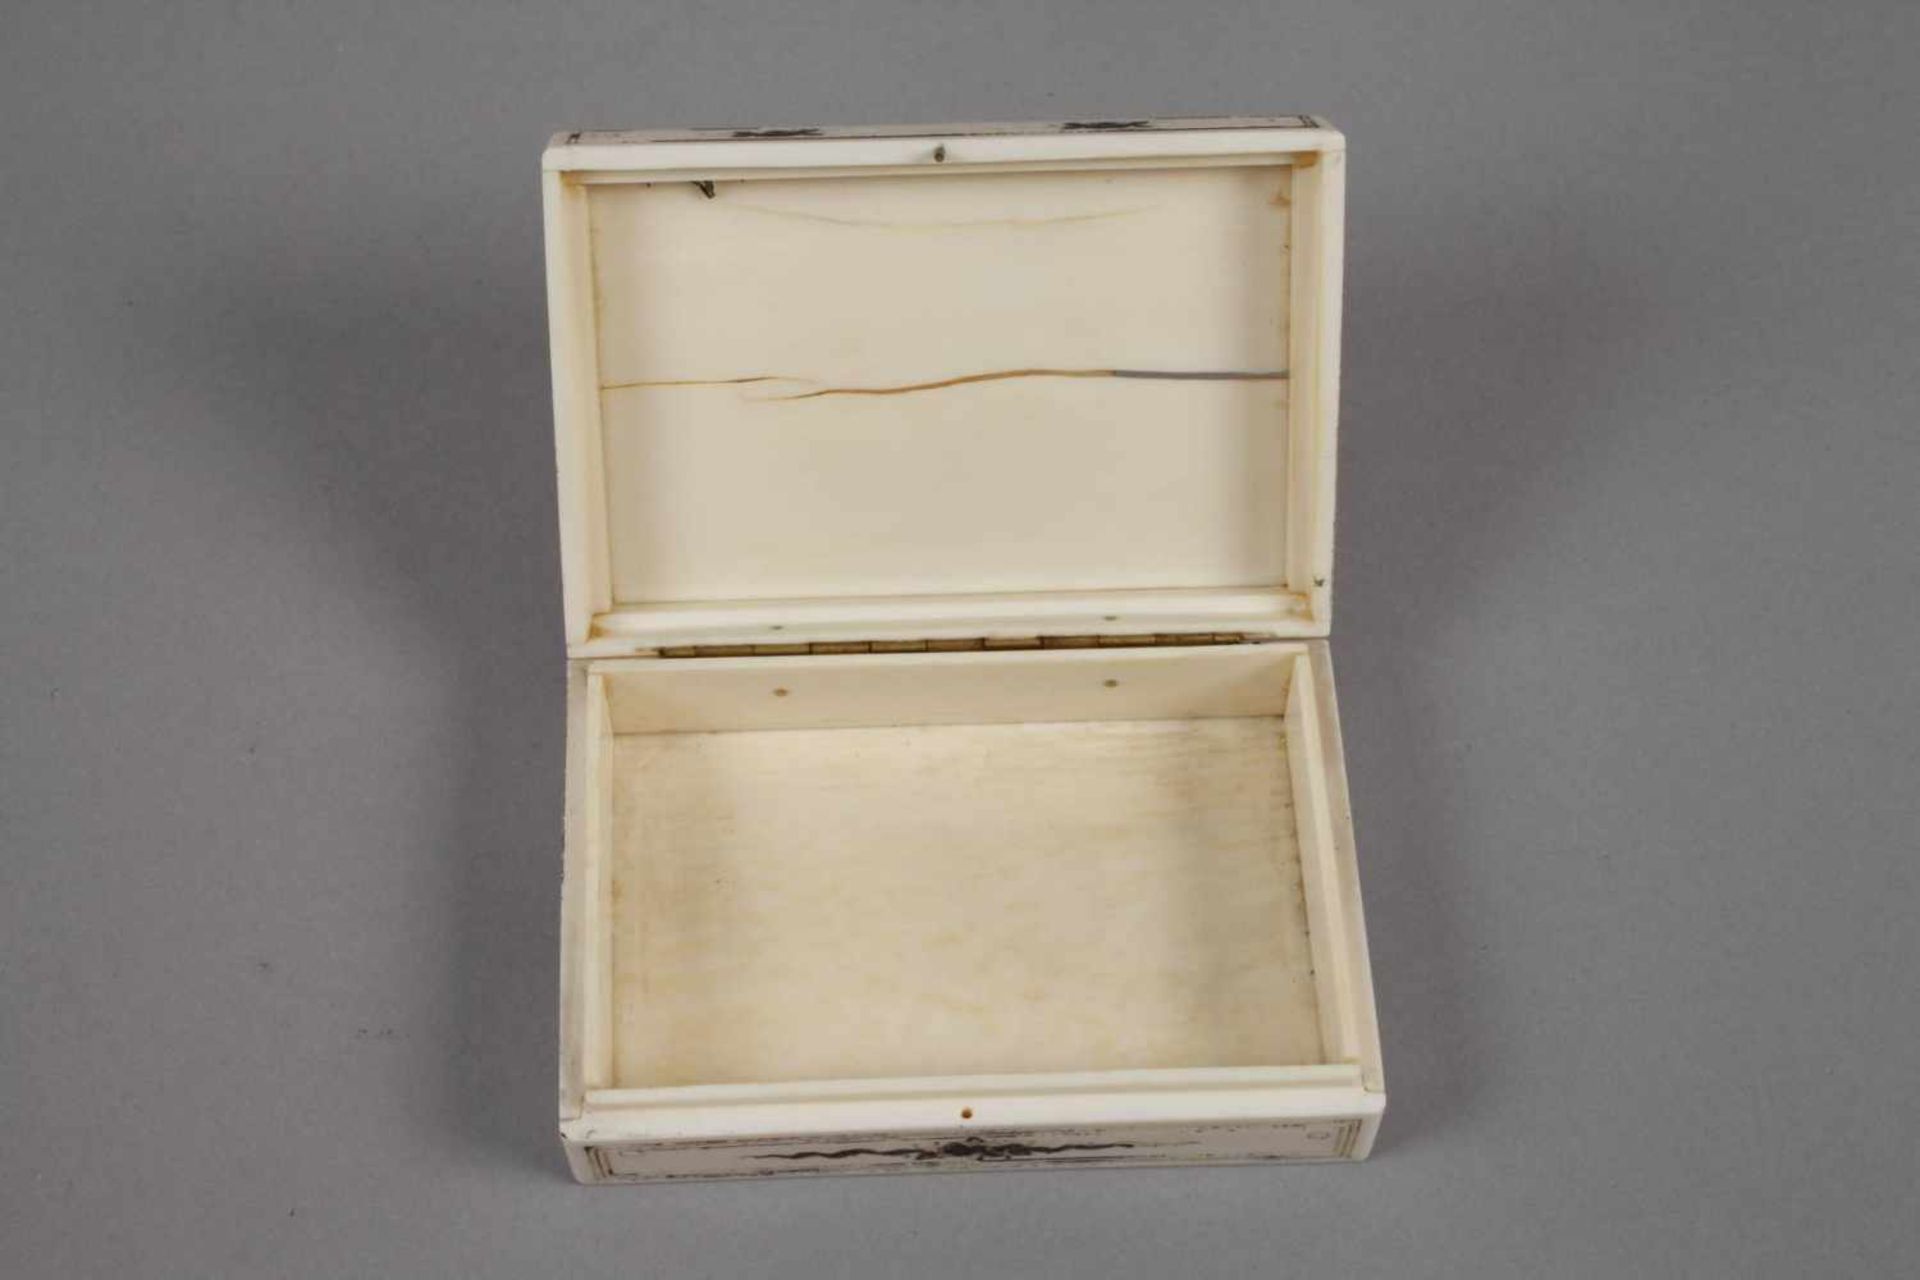 Feine Dose Elfenbeinum 1780, Elfenbein, fein graviert und silberbronziert, mehrteilig gefertigt - Bild 5 aus 5